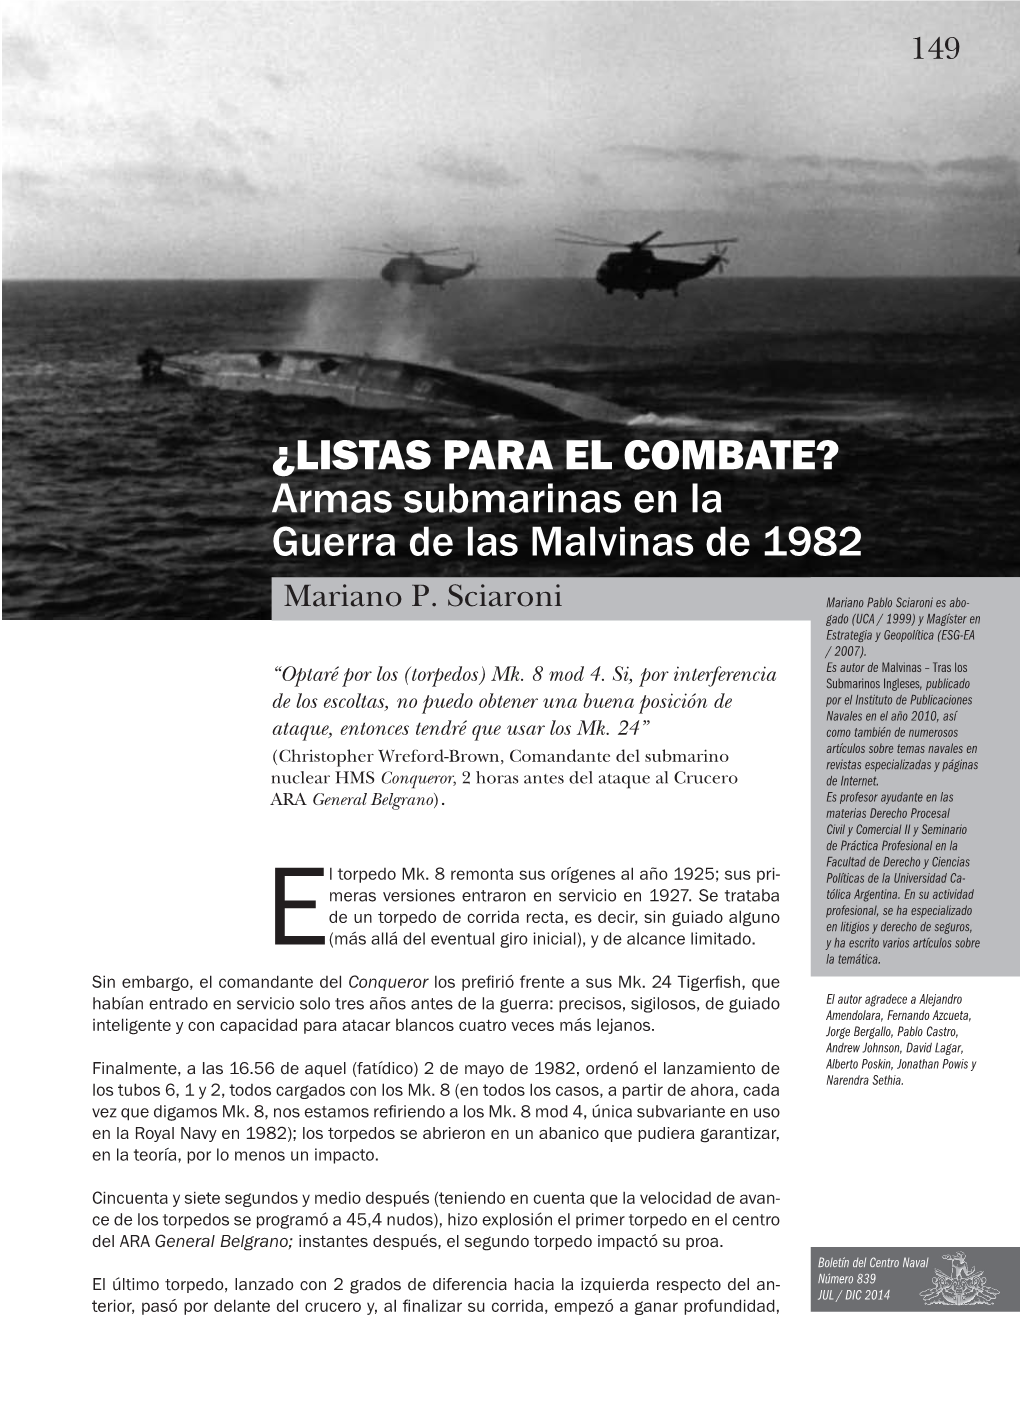 ¿LISTAS PARA EL COMBATE? Armas Submarinas En La Guerra De Las Malvinas De 1982